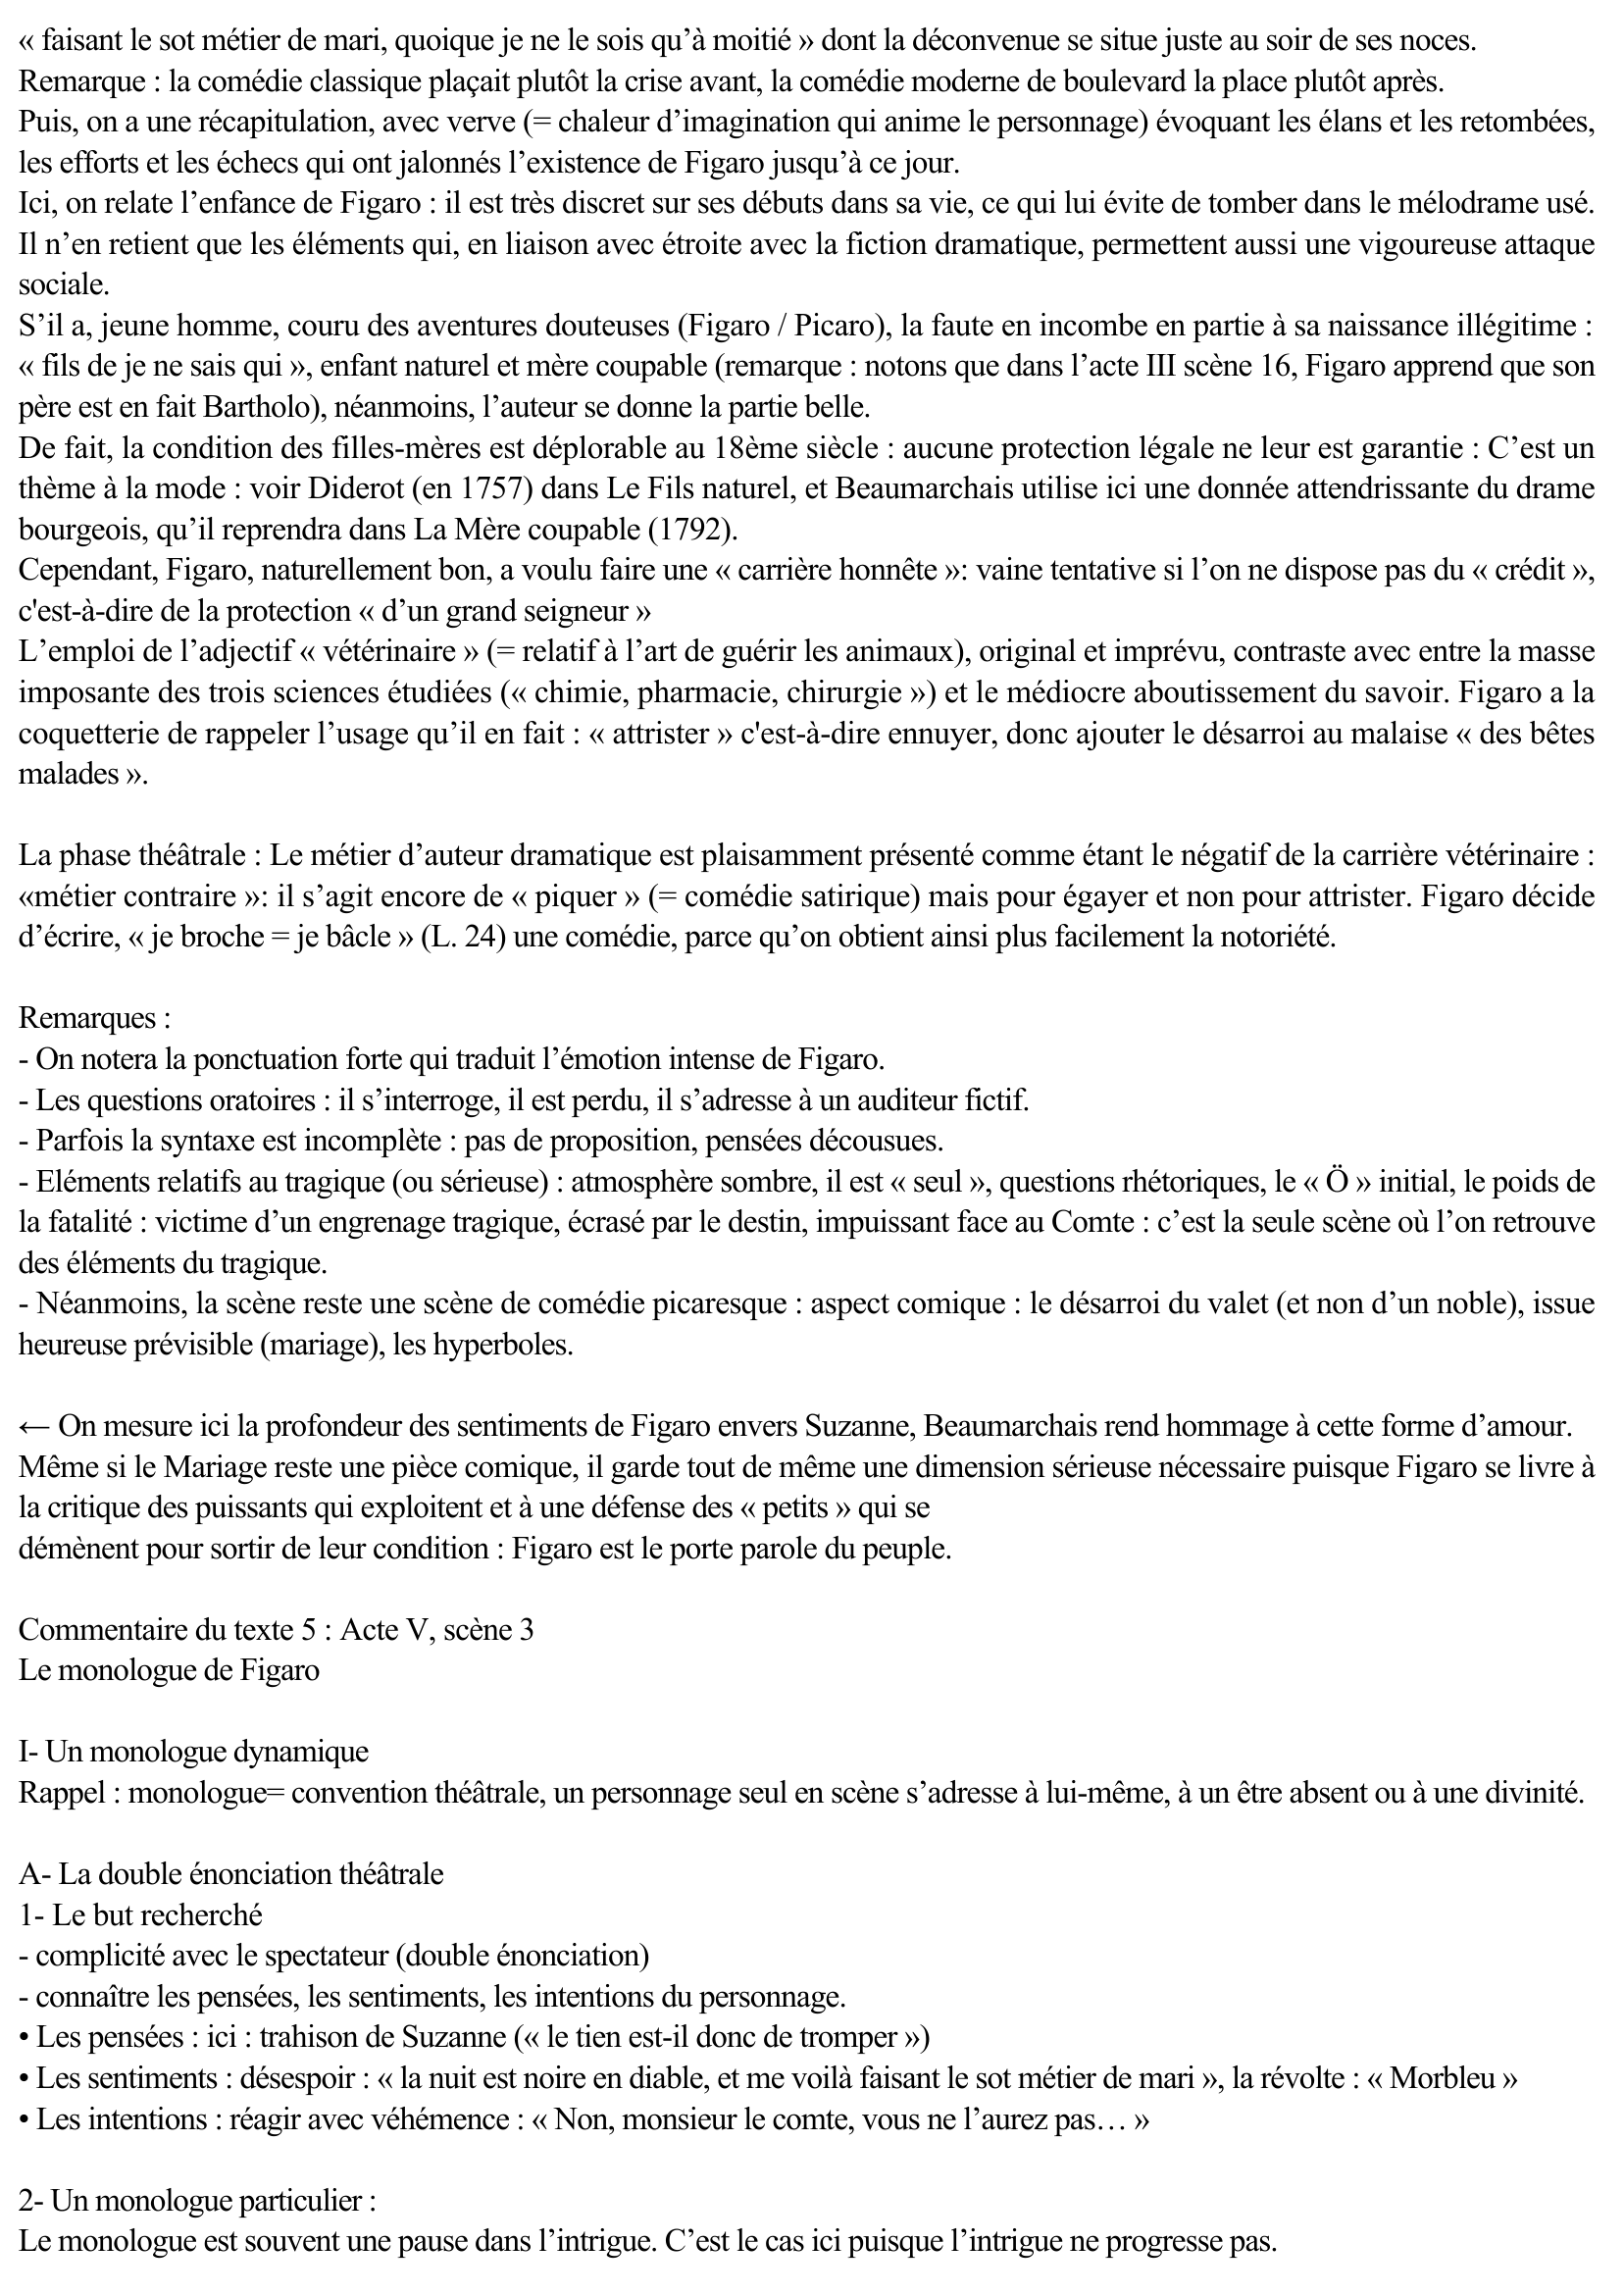 Prévisualisation du document Analyse linéaire : Beaumarchais, Le Mariage de Figaro - Acte V, scène 3 : le monologue